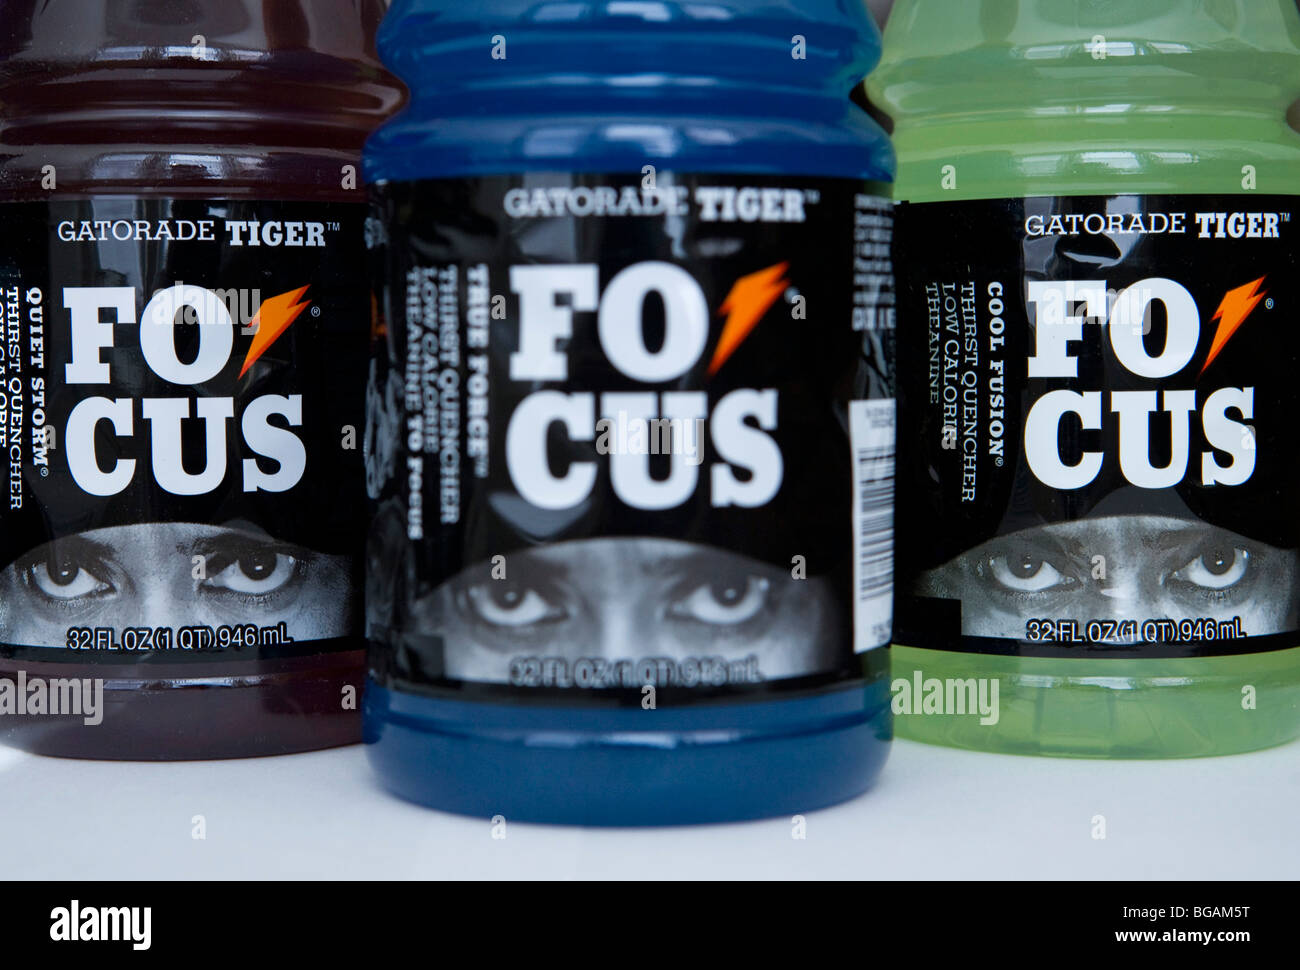 Le bottiglie delle ora interrotto Tiger Woods Gatorade bere. Foto Stock